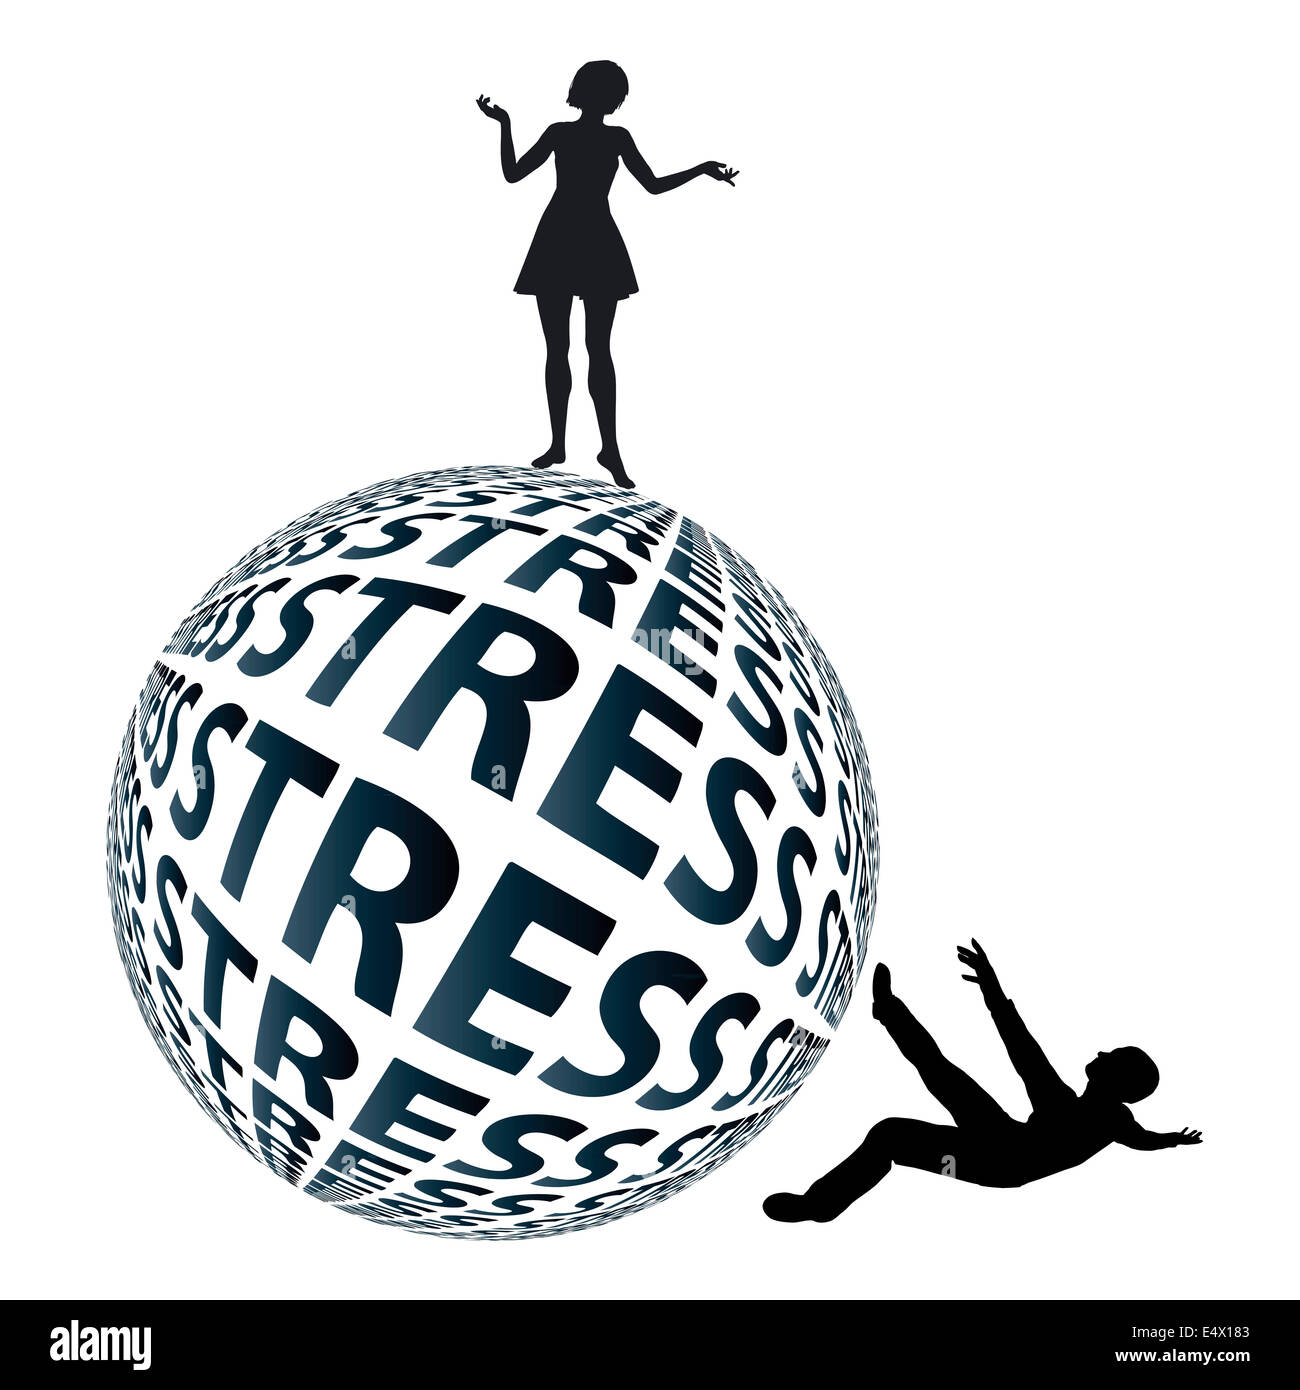 Frauen können mit extremen Stresssituationen weit besser als Männer bewältigen. Stockfoto